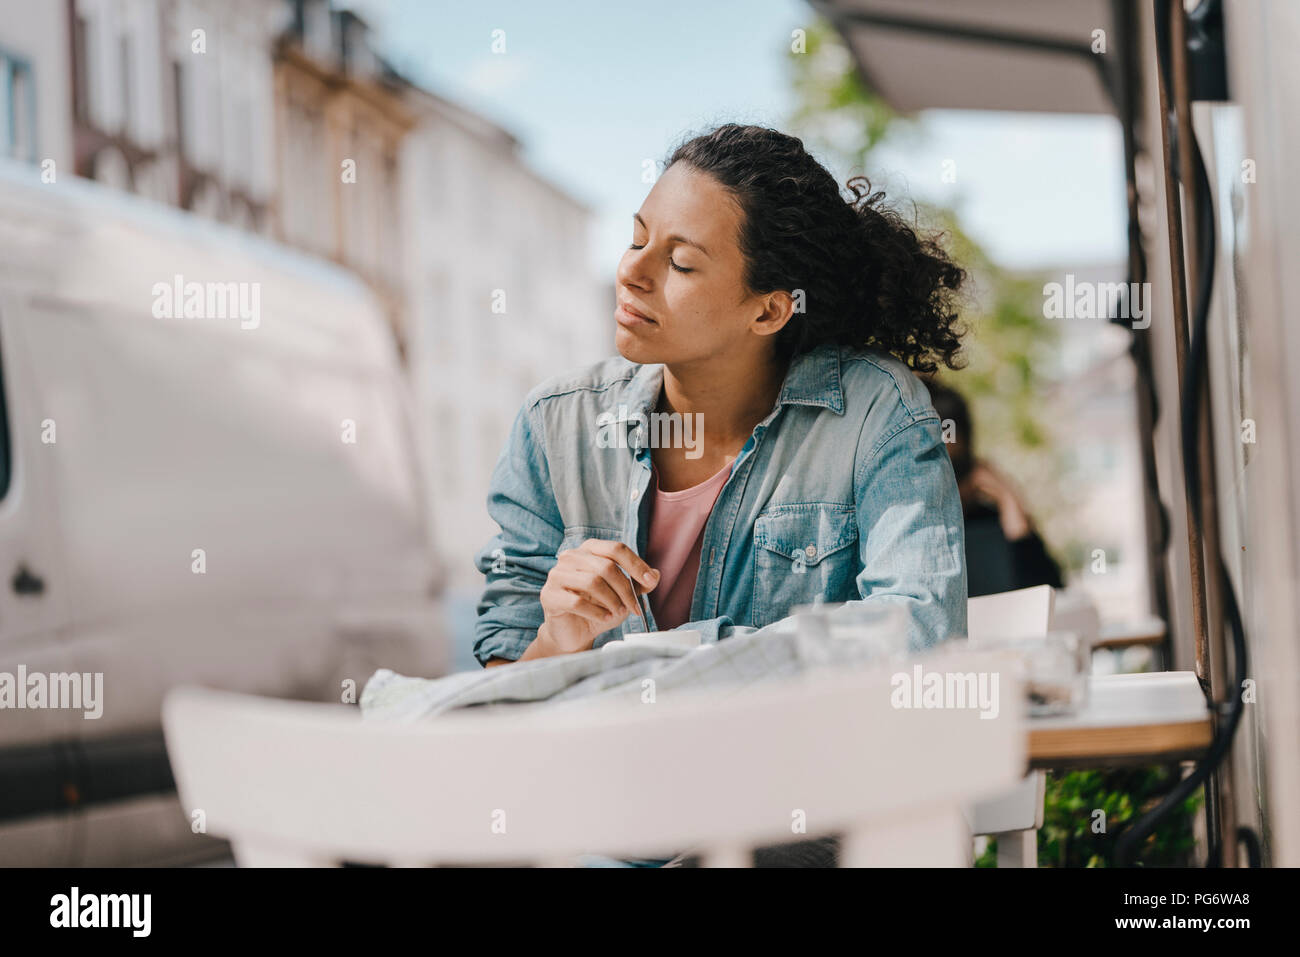 Junge Frau vor Café sitzen mit geschlossenen Augen, die Sonne genießen Stockfoto